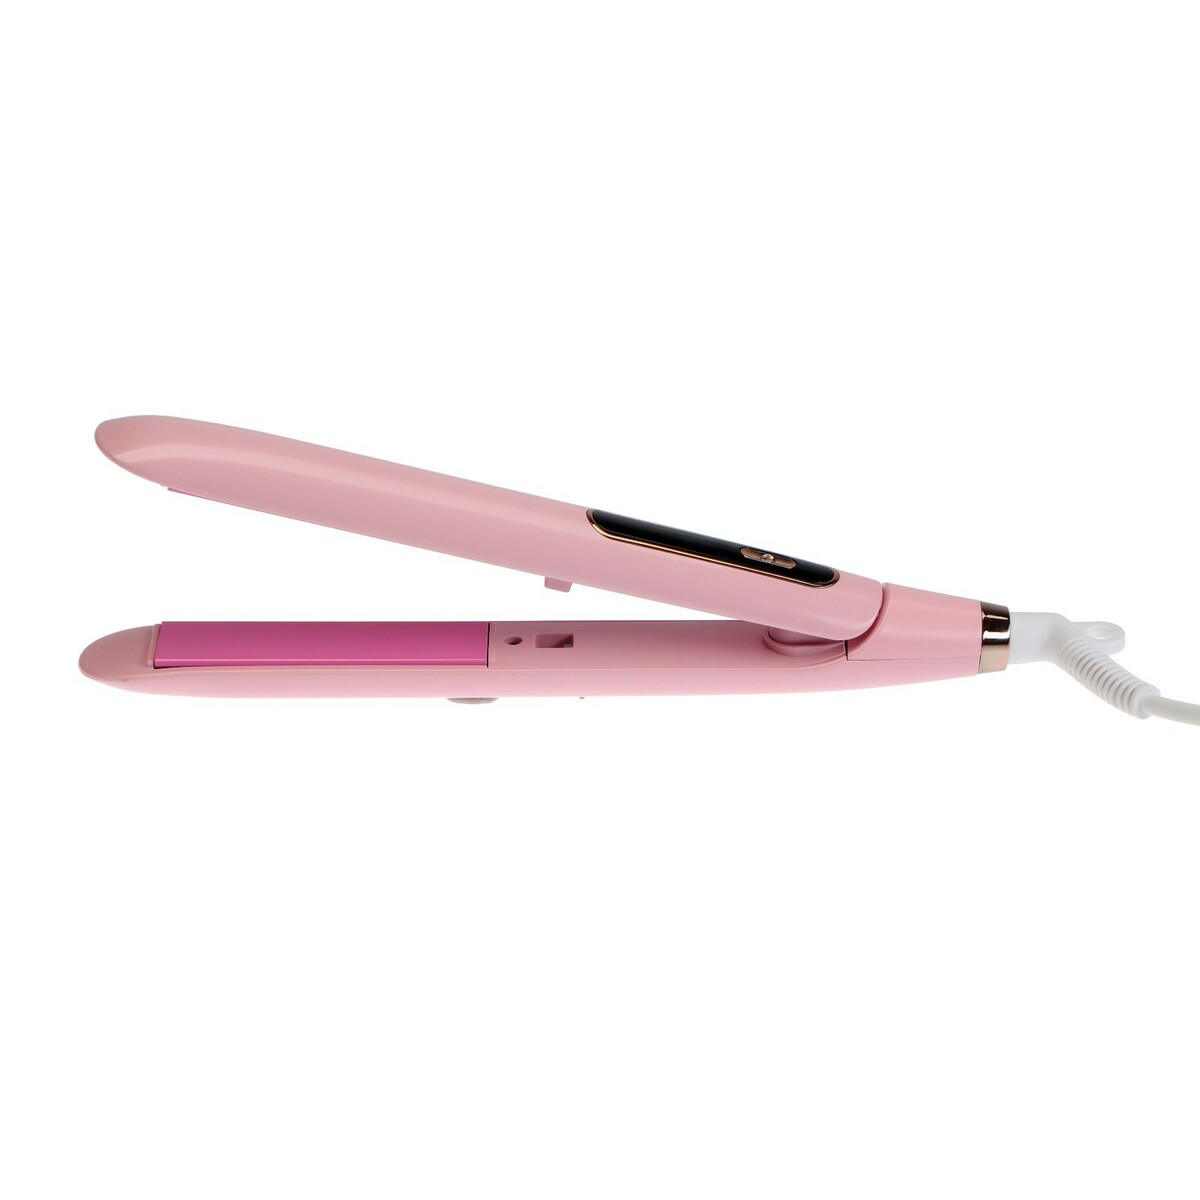 Выпрямитель для волос luazon lw-37, 45 вт, керамическое покрытие, до 230°c, розовый блюдо керамическое сервировочное лист 26×20 см розовый